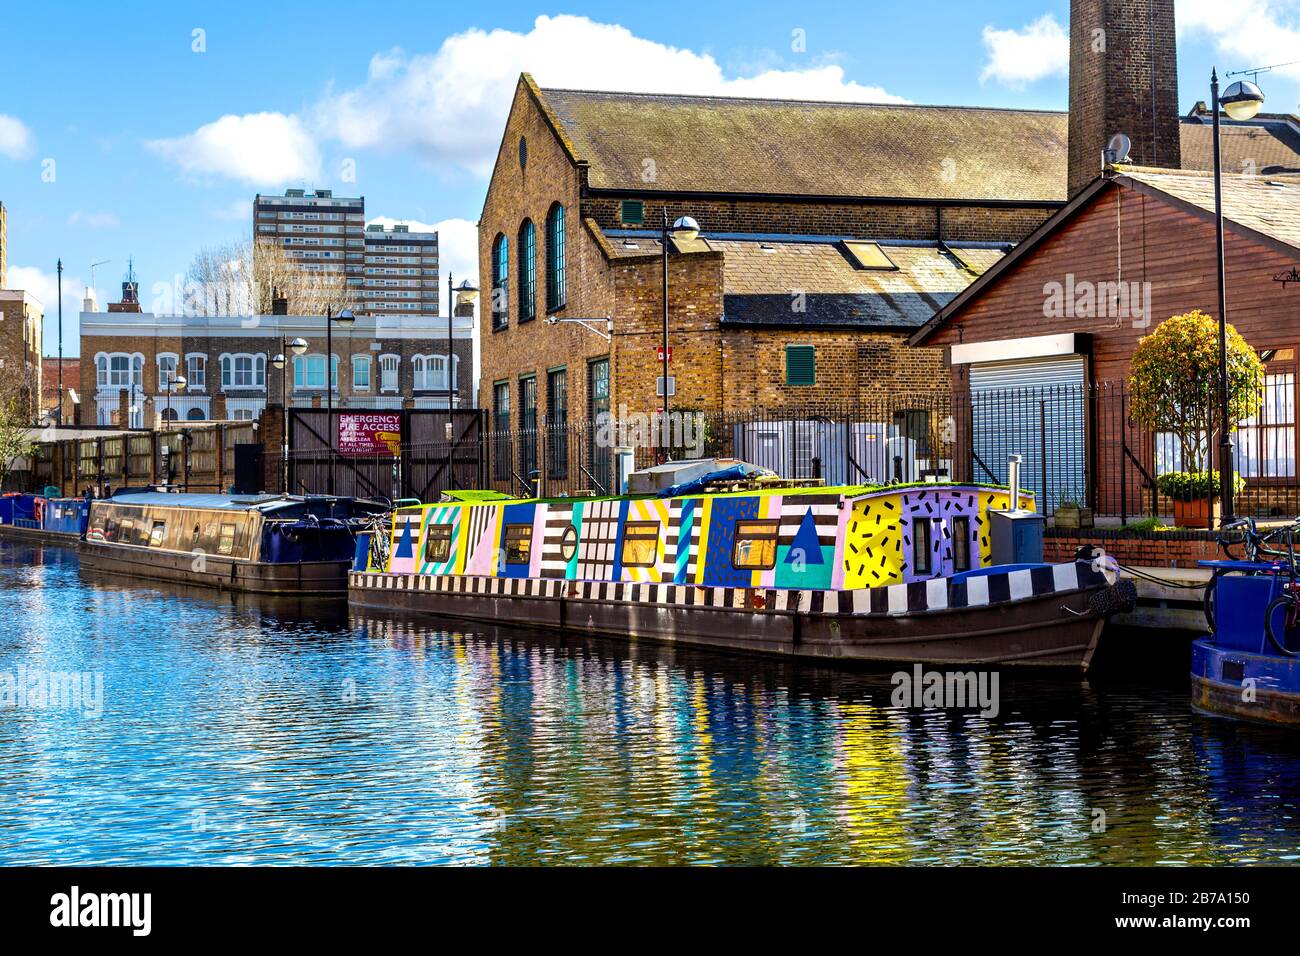 Hausboot gemalt in bunten grafischen Mustern Liegeplatz in Hertford Union Canal, London, UK Stockfoto